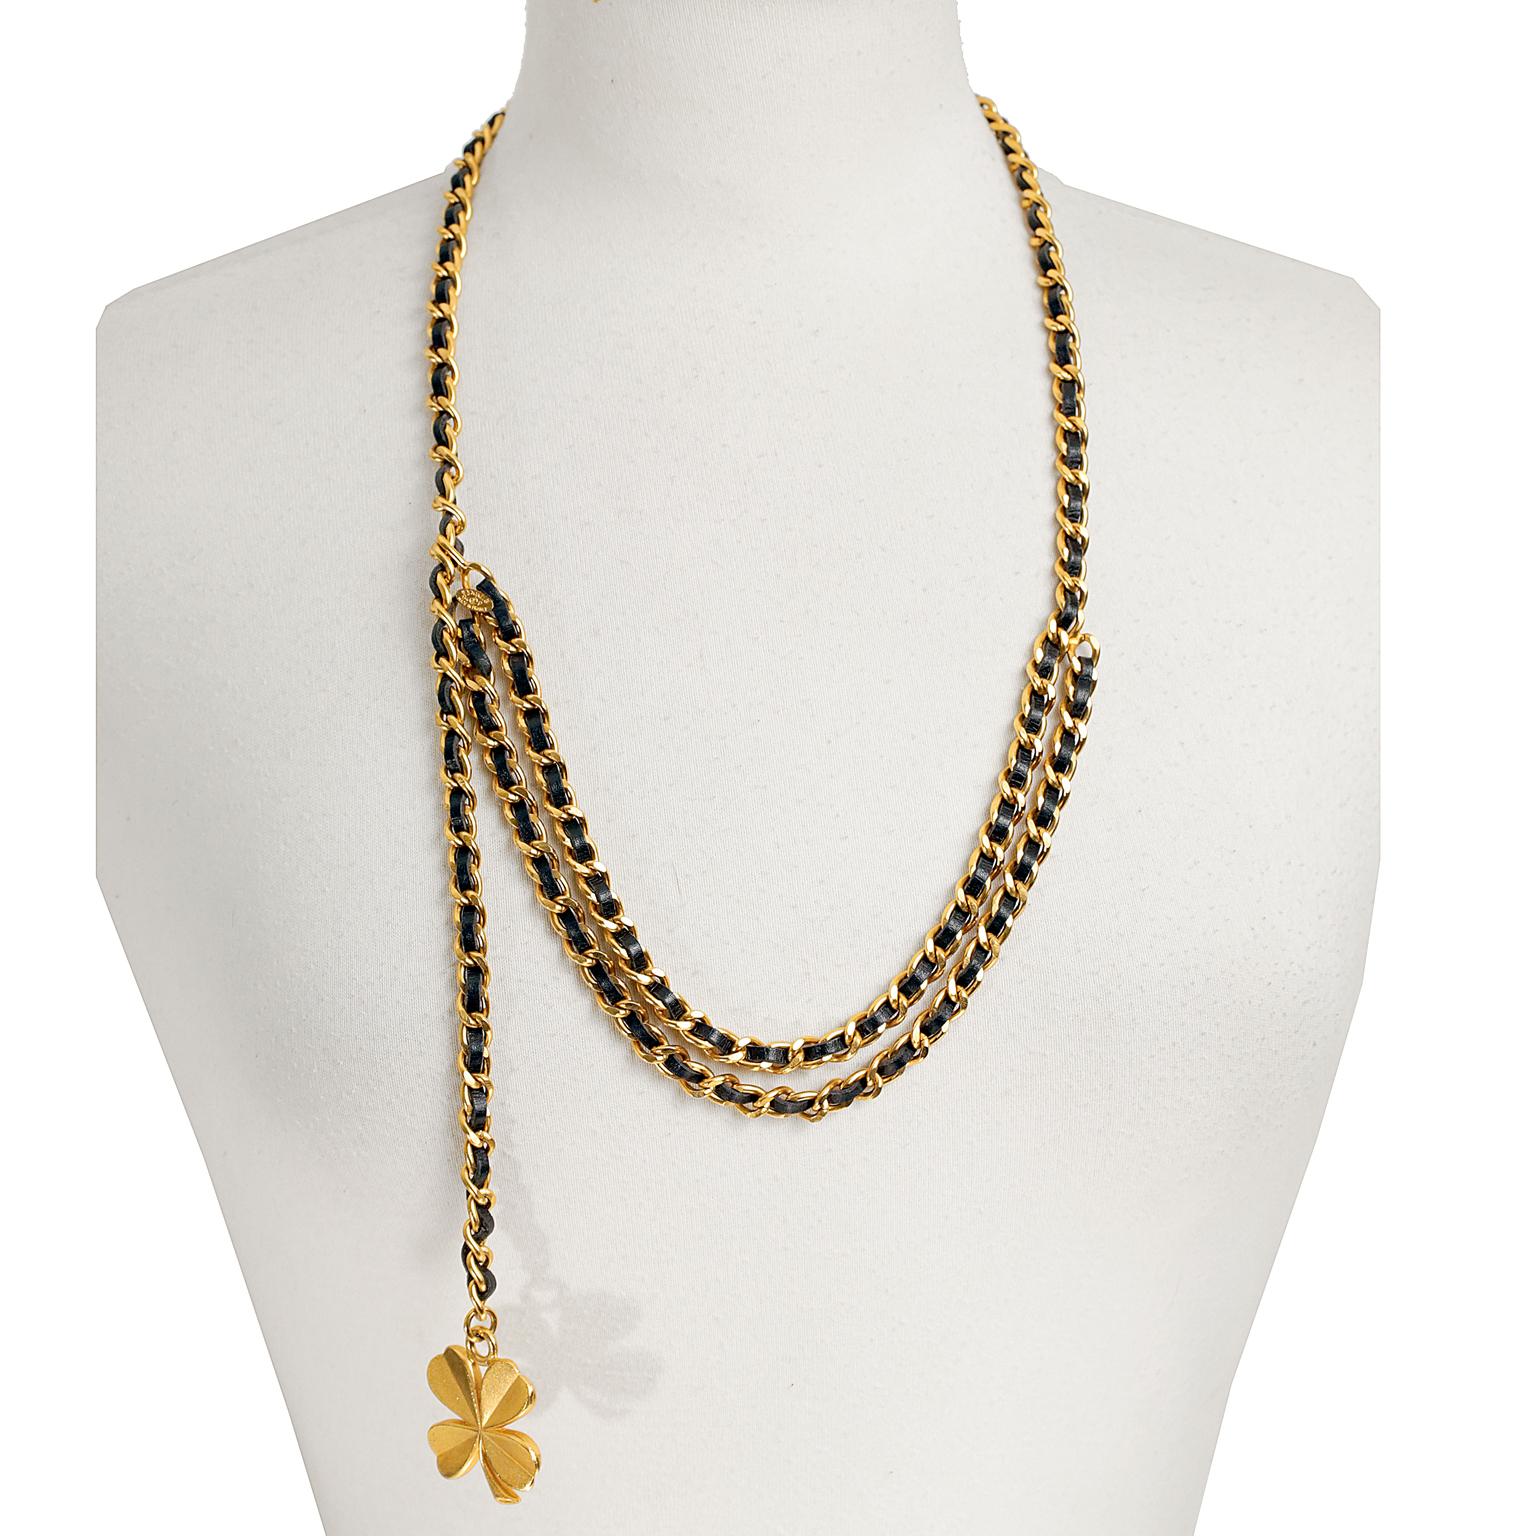 Diese authentische Chanel Schwarz und Gold Kette Klee Gürtel Halskette ist in sehr gutem Zustand.  Vielseitig und klassisch - ein Muss für jede Collection. 
Die goldene Kette ist mit schwarzem Leder verwoben.  An einem Ende baumelt dekorativ ein